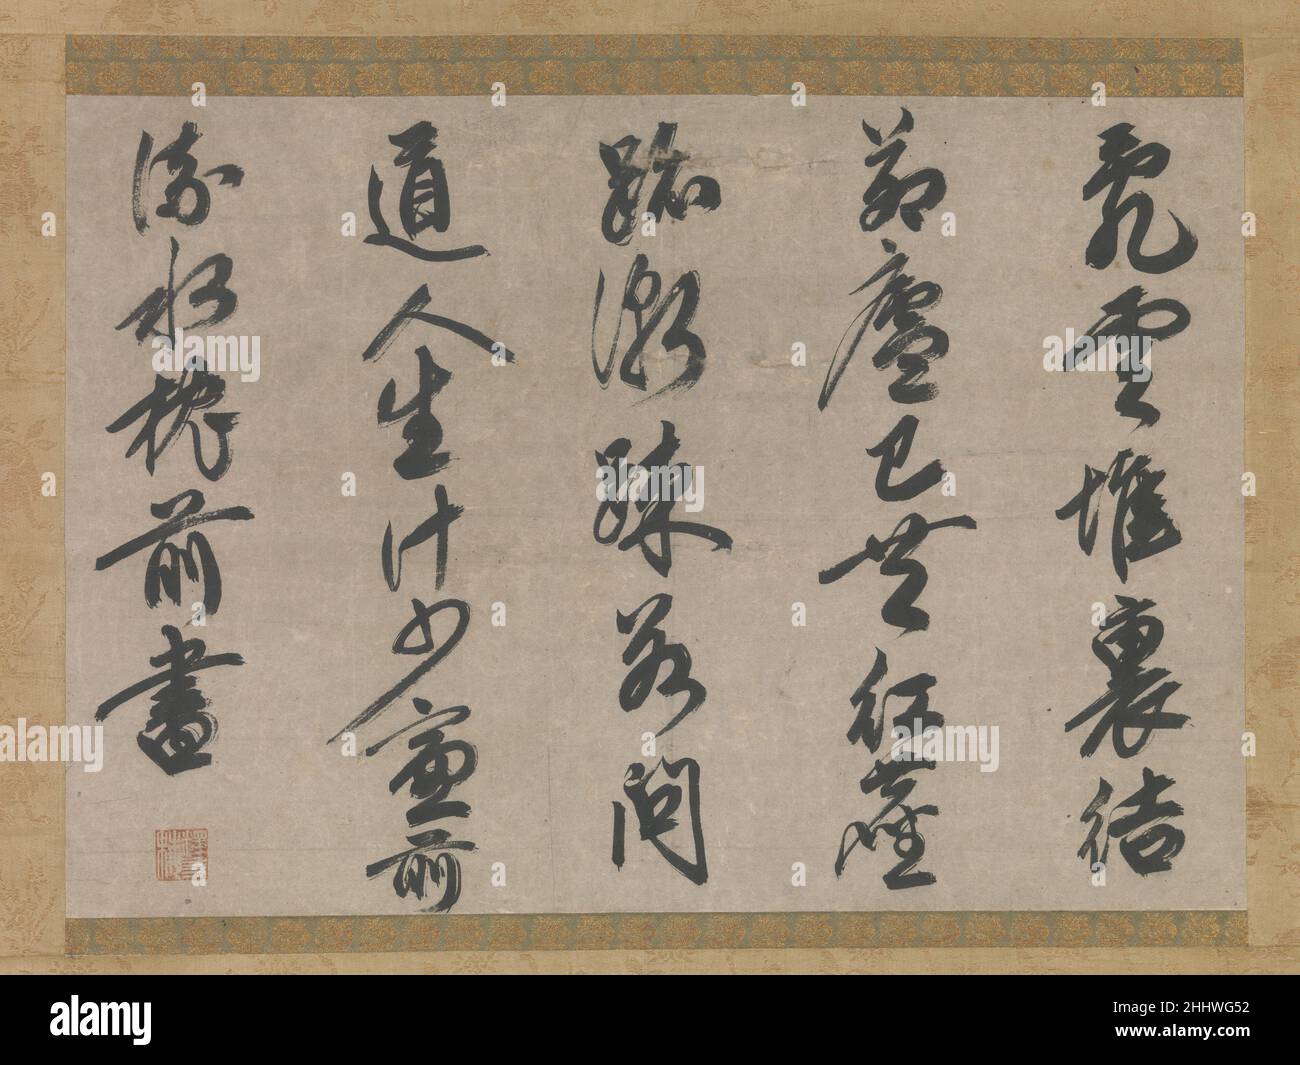 Gedicht über das Thema des Lebens eines Mönchs die erste Hälfte des 14th. Jahrhunderts Sesson Yūbai 雪村友梅 Sesson Yūbai, einer der versiertesten Literaten-Zen-Mönche, war sowohl kalligrafisch als auch in chinesischer Dichtung bewandert. Nach seinem Studium bei dem chinesischen Emigrantenmönch Yishan Yining (japanisch: Issan Ichinei, 1247–1317) verbrachte er 23 Jahre in China, und seine Kalligraphie offenbart den Einfluss der neuesten chinesischen Stile. Der große Abstand zwischen den Textspalten ermöglicht es, die längeren horizontalen Striche und ausgeprägten Diagonalen abzuheben. Die demütigen Bestrebungen, die in diesem Gedicht zum Ausdruck kommen, werden in vielen widerhallt Stockfoto